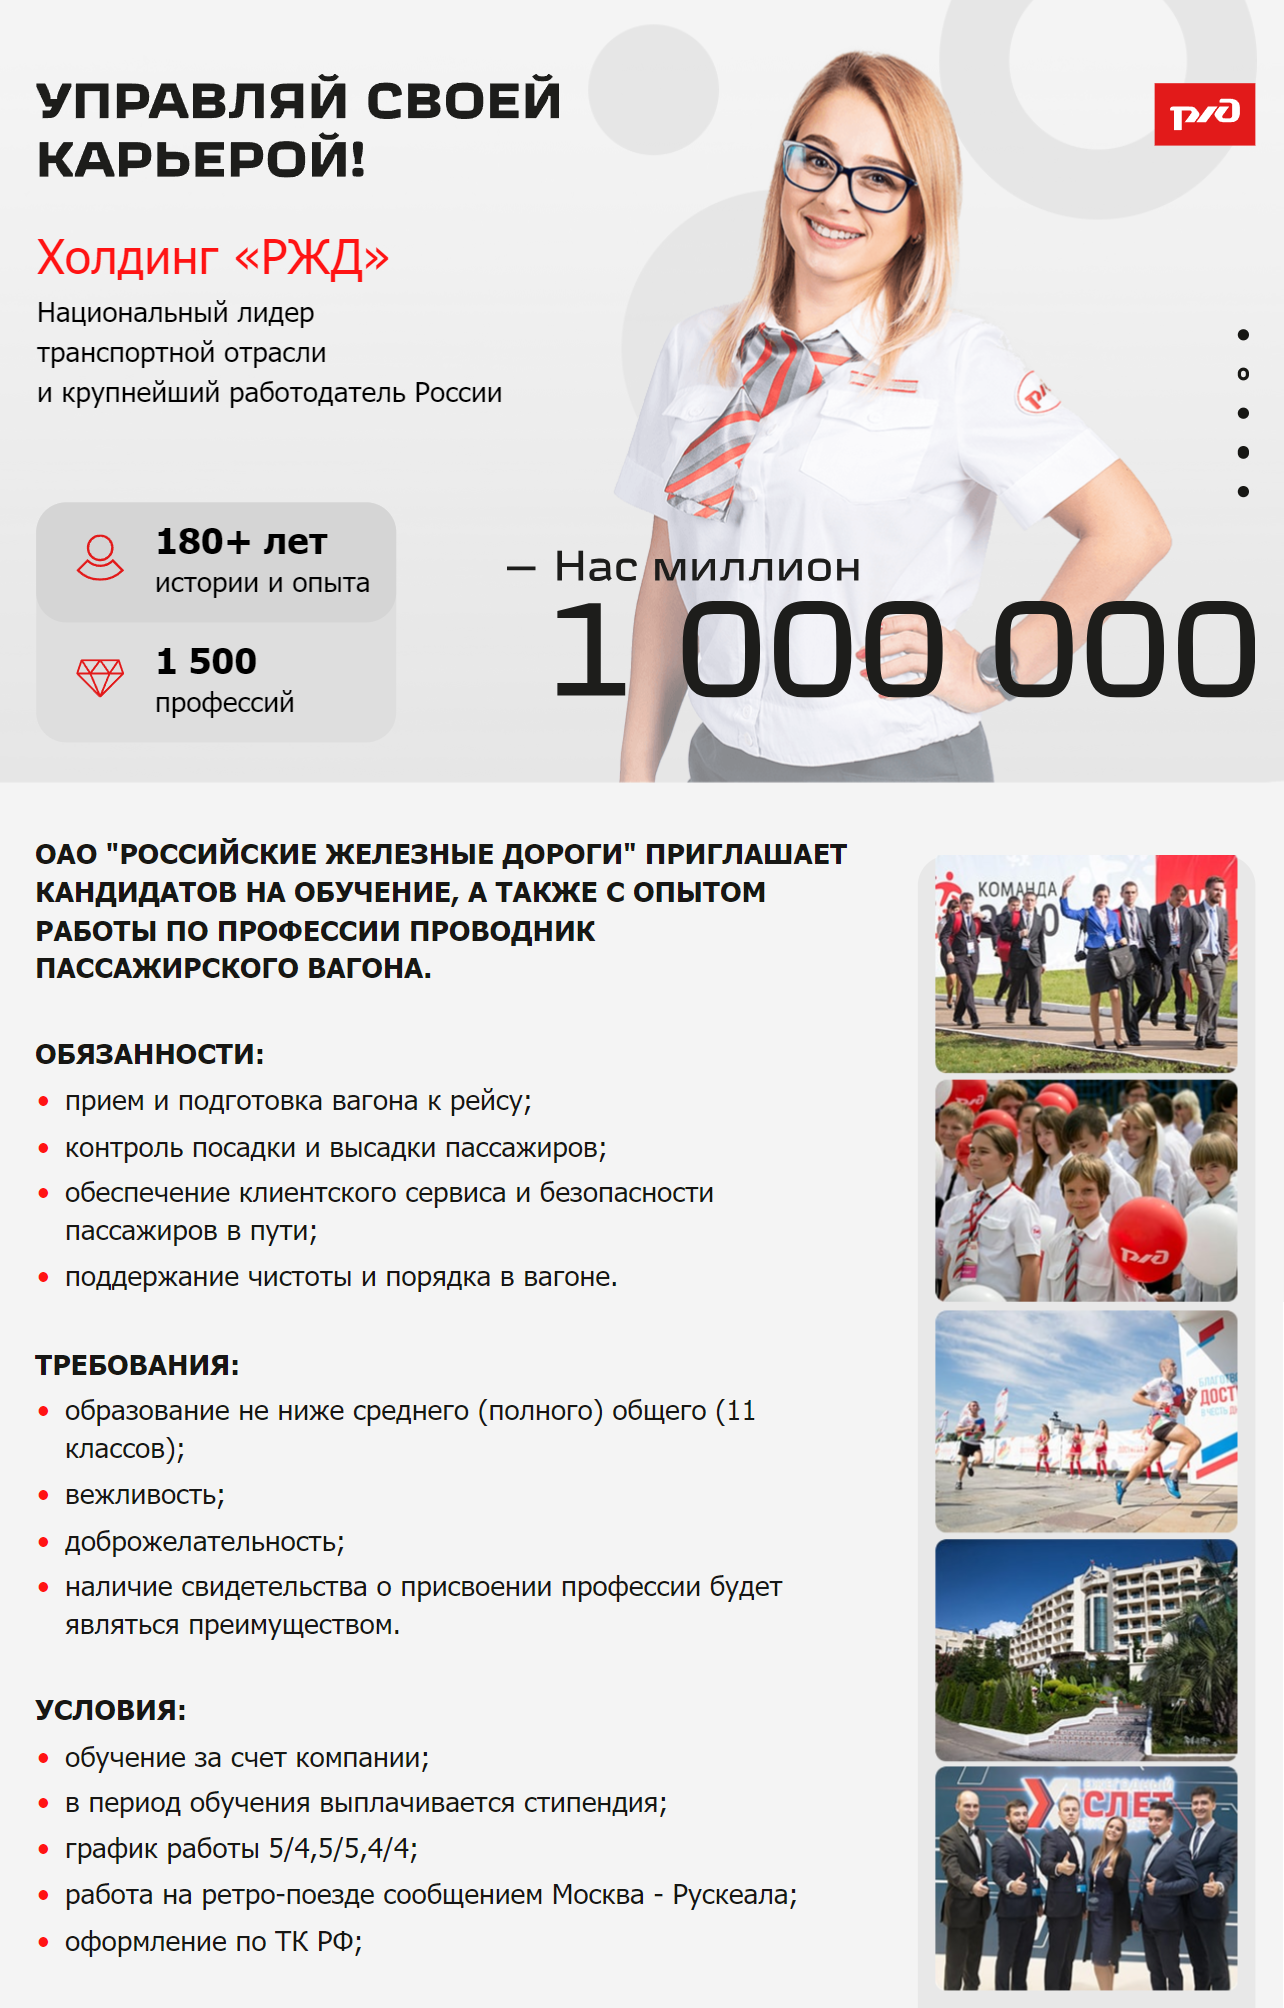 Вот еще одна вакансия. В ней обещают 95 000 ₽ в месяц на руки. Источник: hh.ru